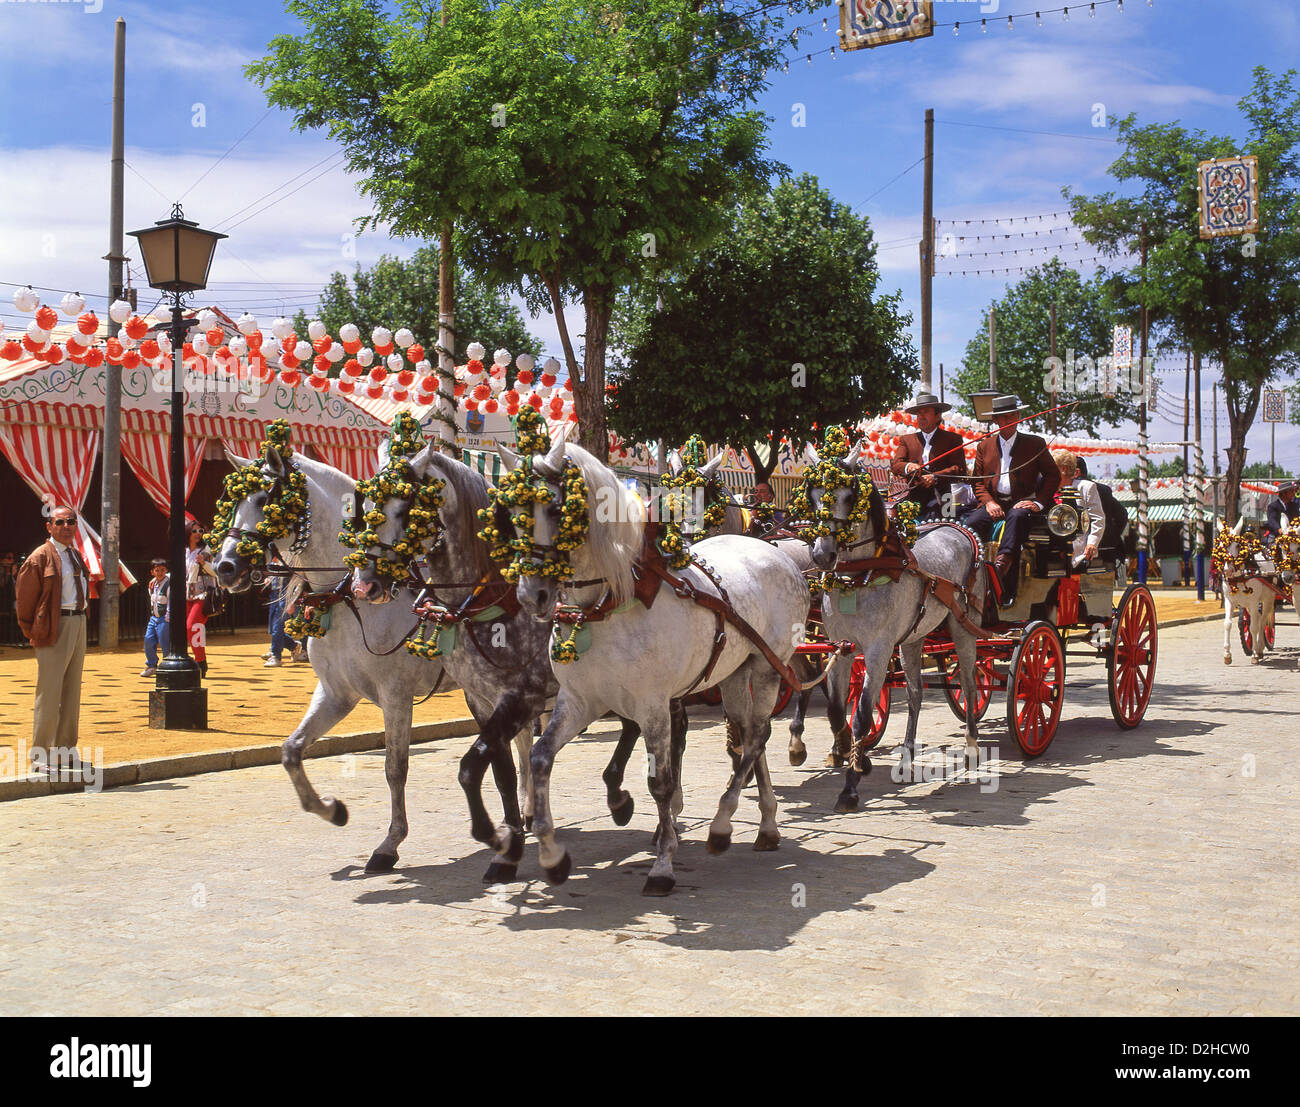 Feria De Abril De Utrera En La Decoración Y Los Caballos De Sevilla Foto de  archivo - Imagen de ambiente, traje: 77843608